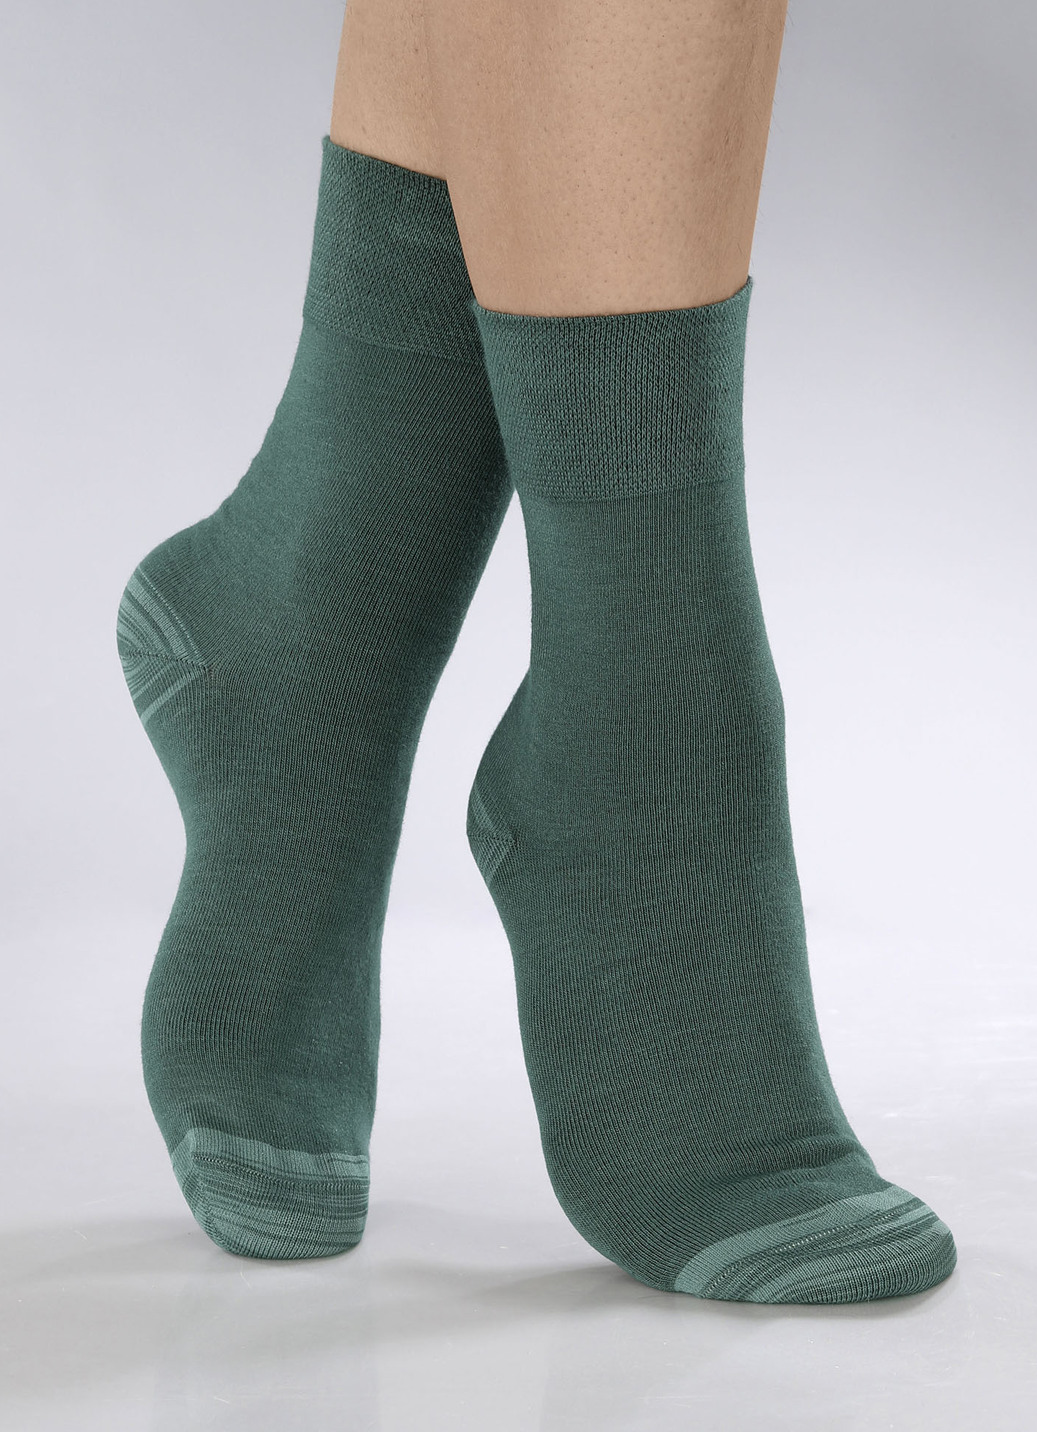 Sechserpack Socken in verschiedenen Farbstellungen, Größe 2 (Schuhgr. 39-42), 2X Grün, 2X Petrol, 2X Beere von BADER